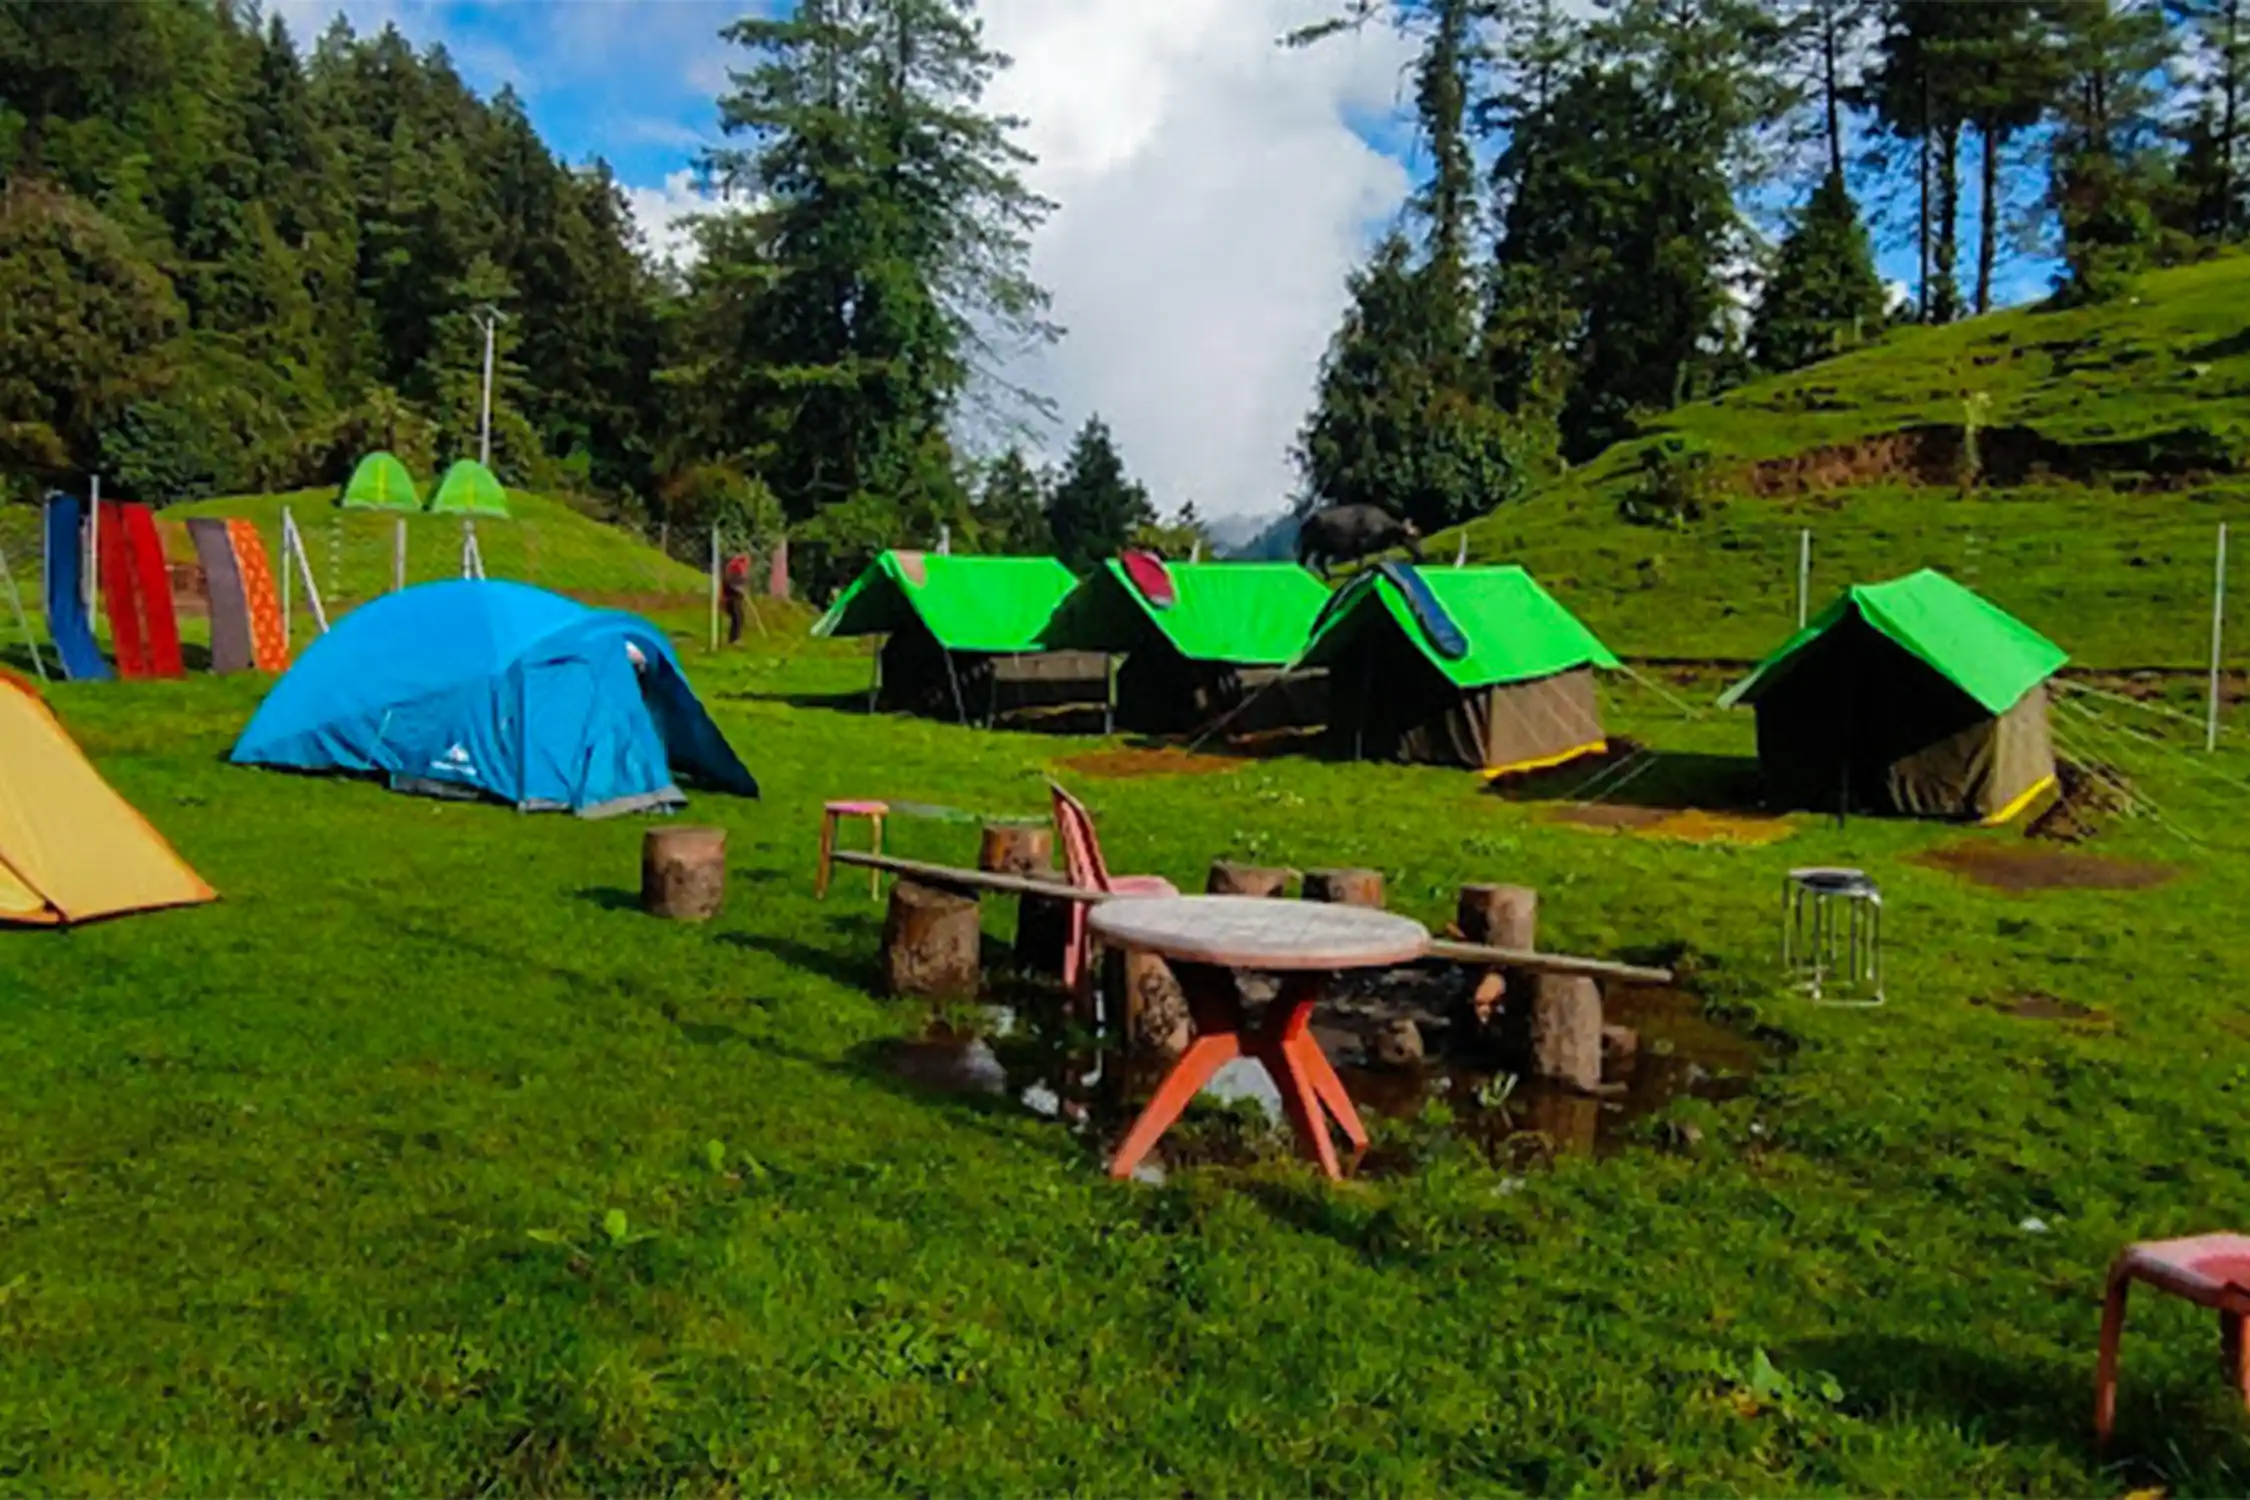 Prashar Lake Camping with Trekking